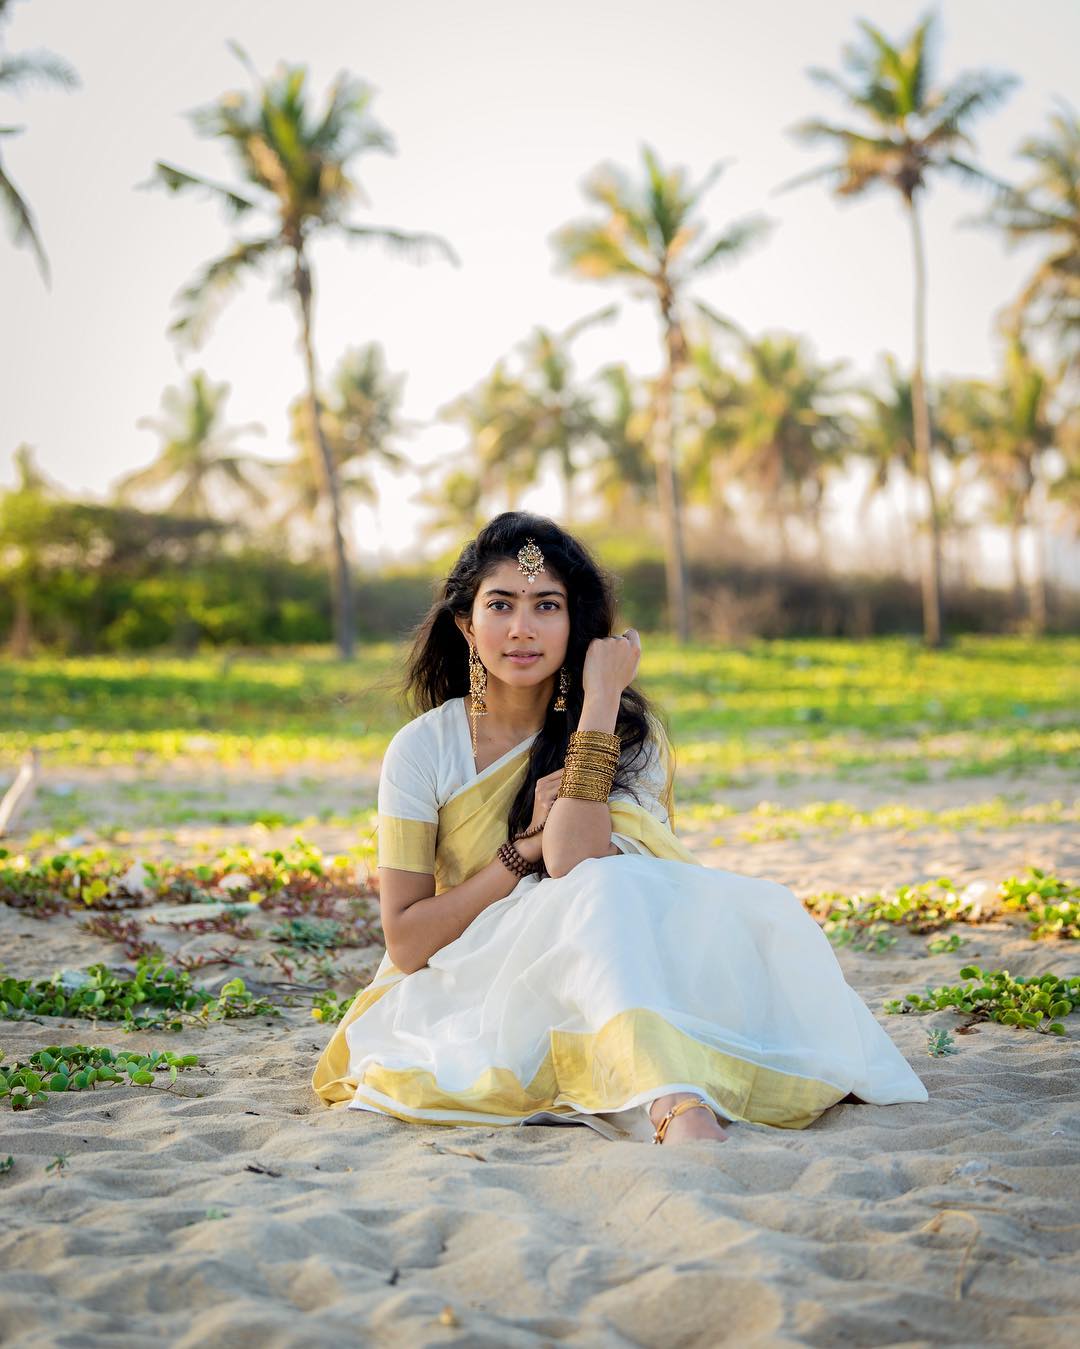  நடிகை சாய் பல்லவி ( Photo: Instagram.com/ saipallavi.senthamarai)